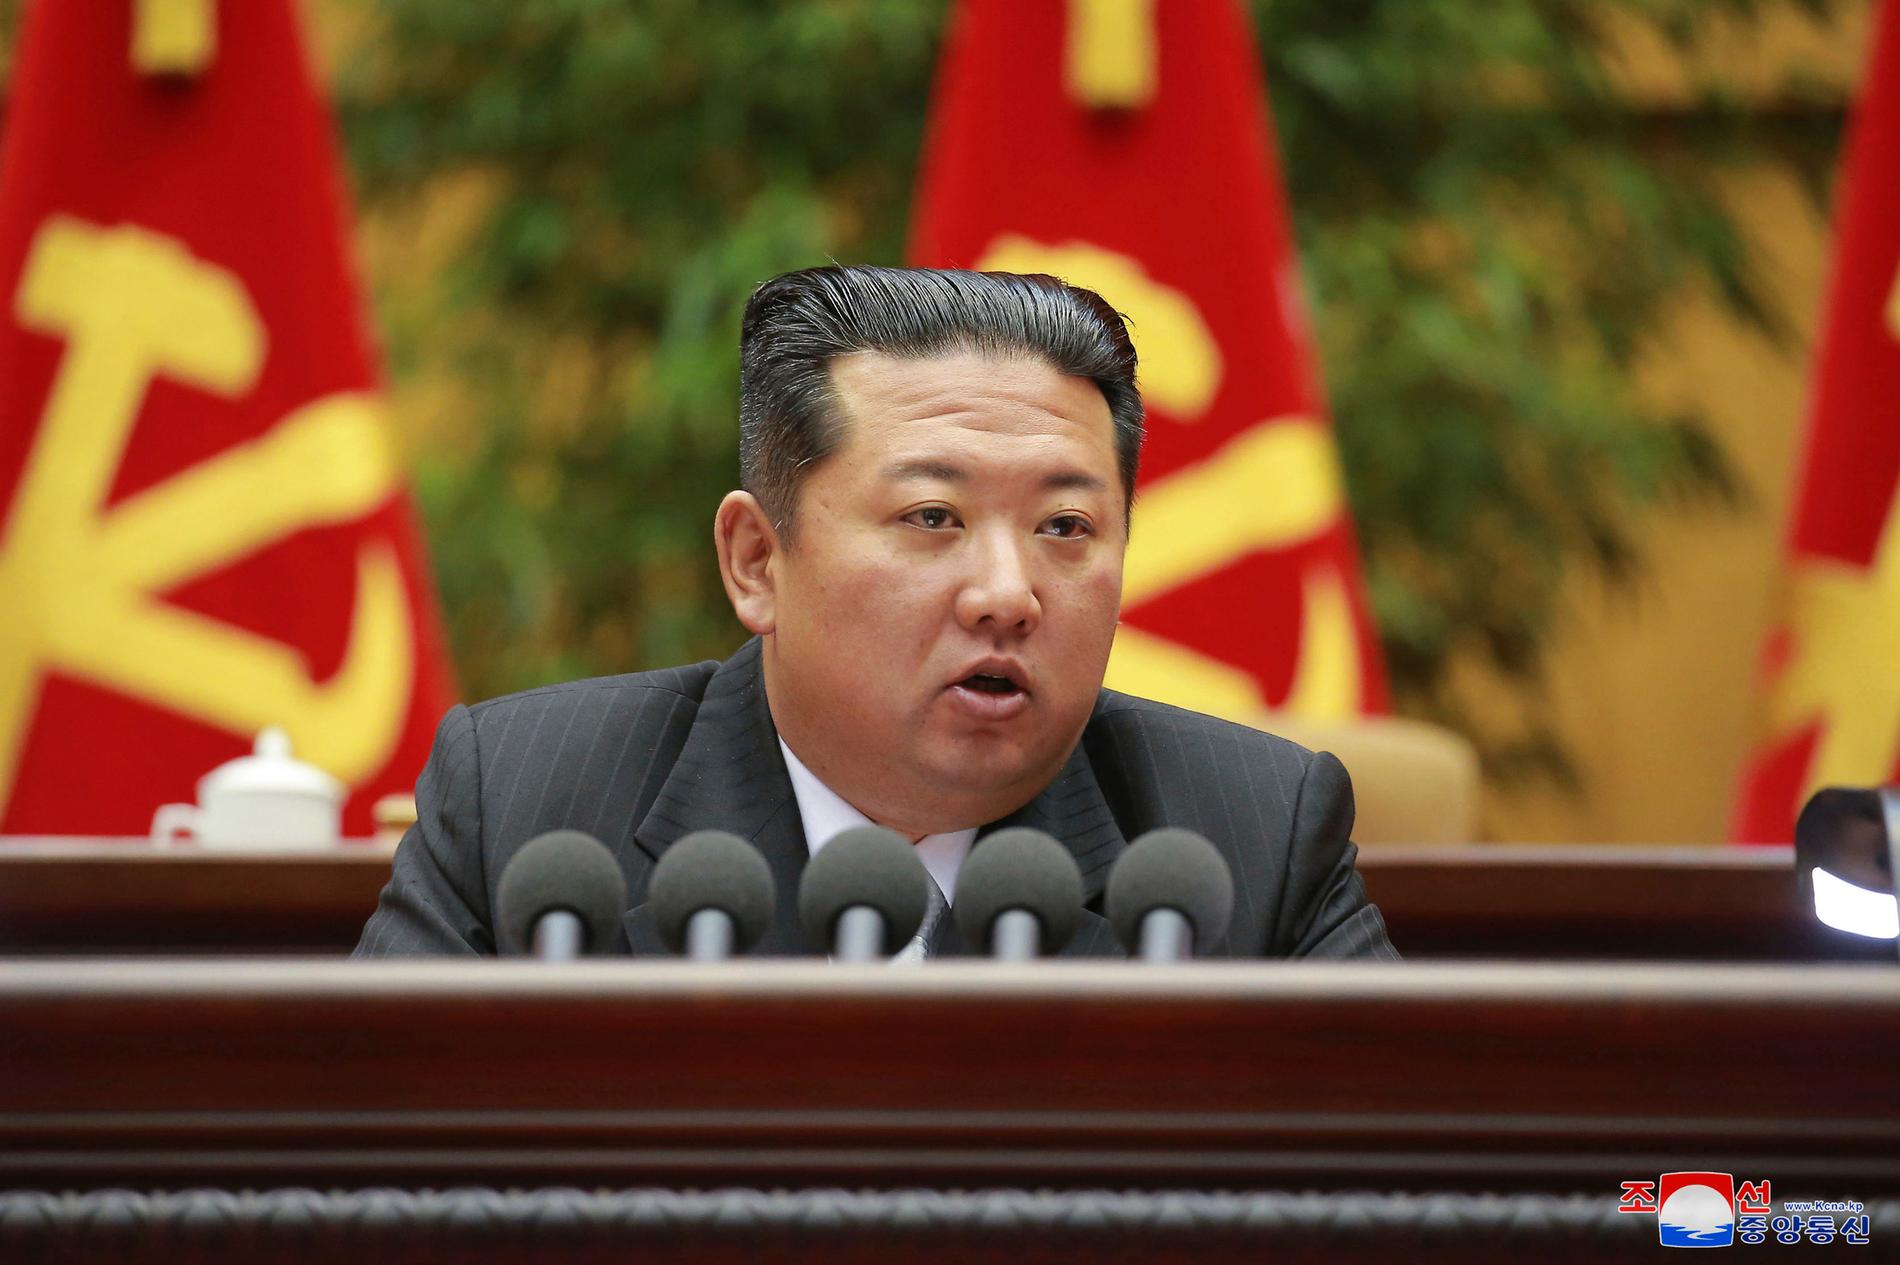 Nordkoreas diktator Kim Jong Un talar på ett partimöte på lördagen.